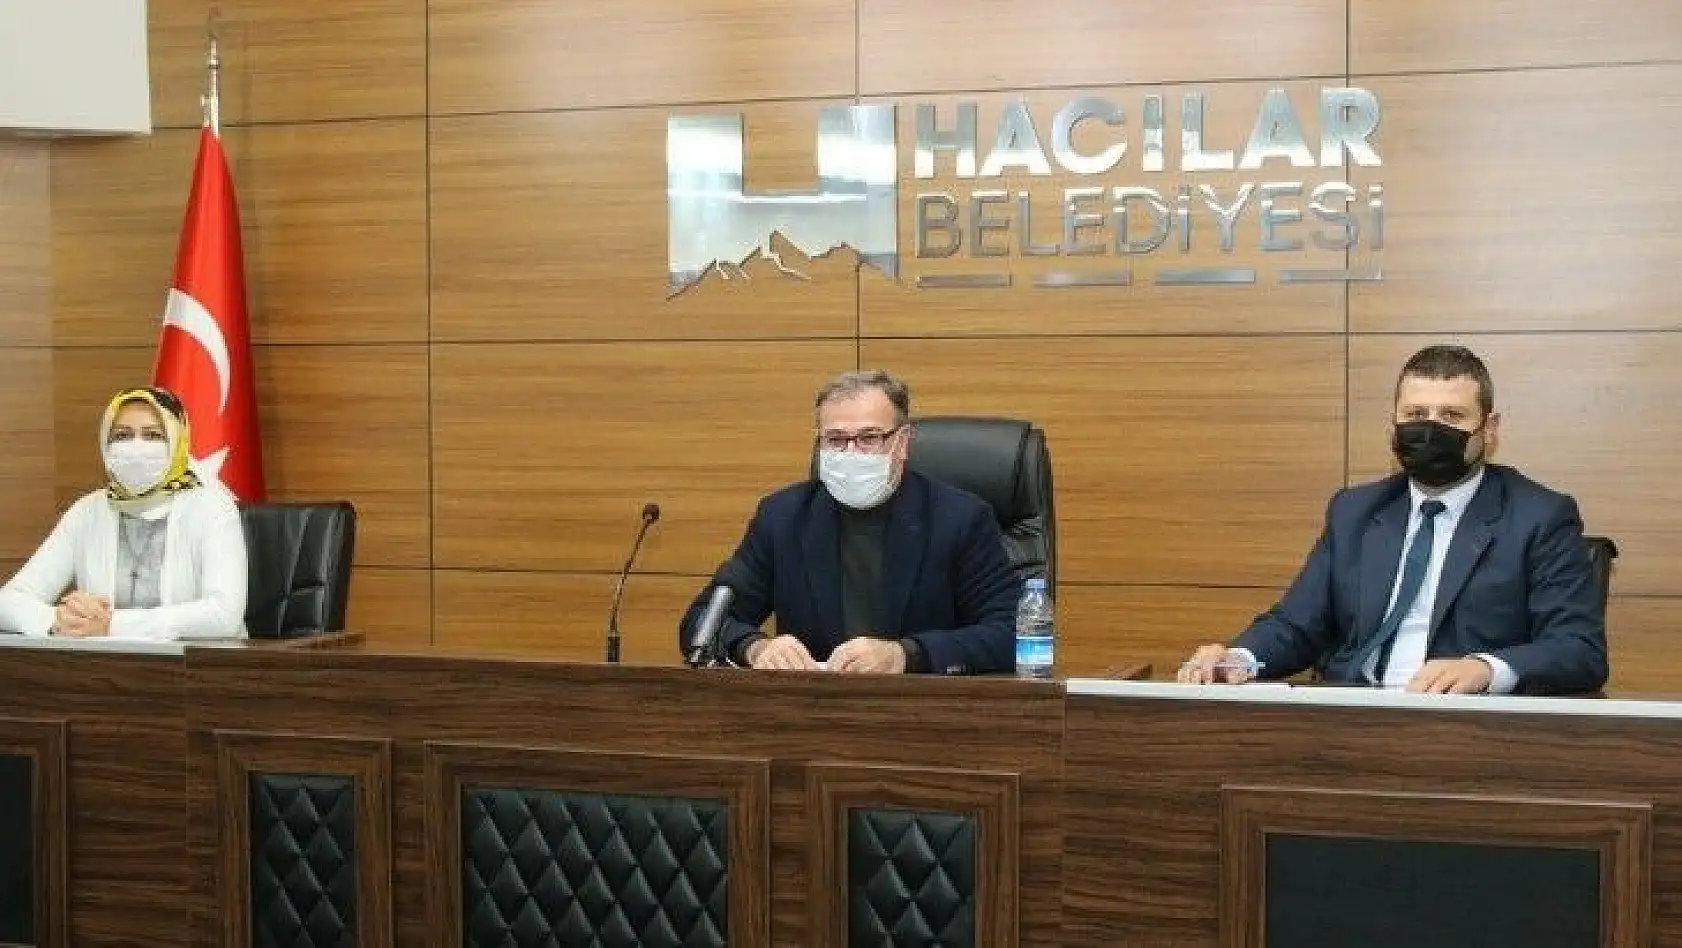 Hacılar Belediyesi 2020 yılında 10 meclis toplantısında 66 konuyu karara bağladı